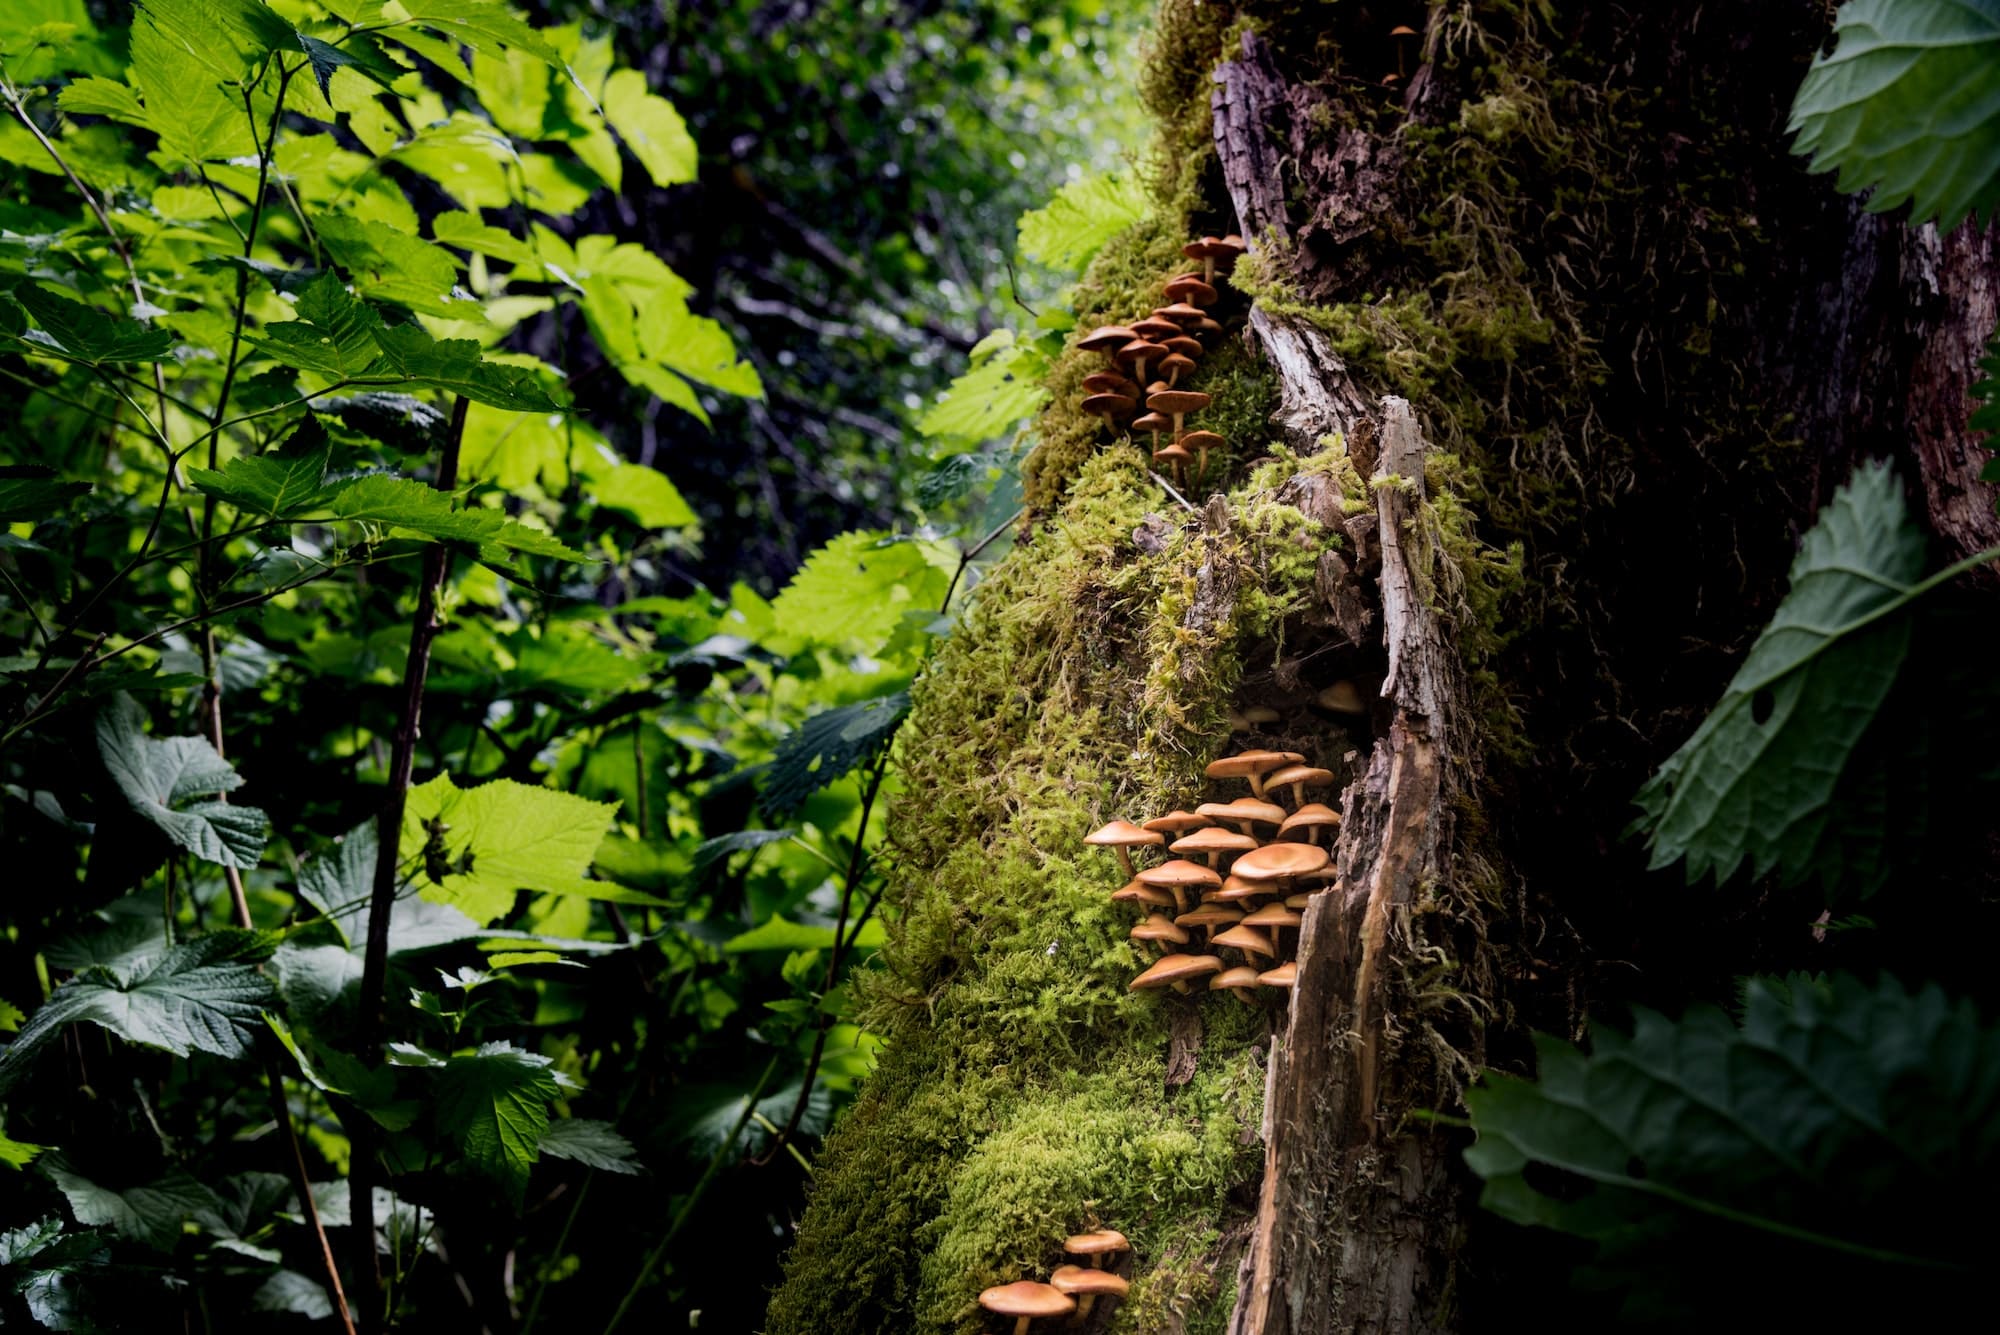 Colonie de champignons sauvages poussant dans une forêt tropicale du nord-ouest du Pacifique. RLTheis